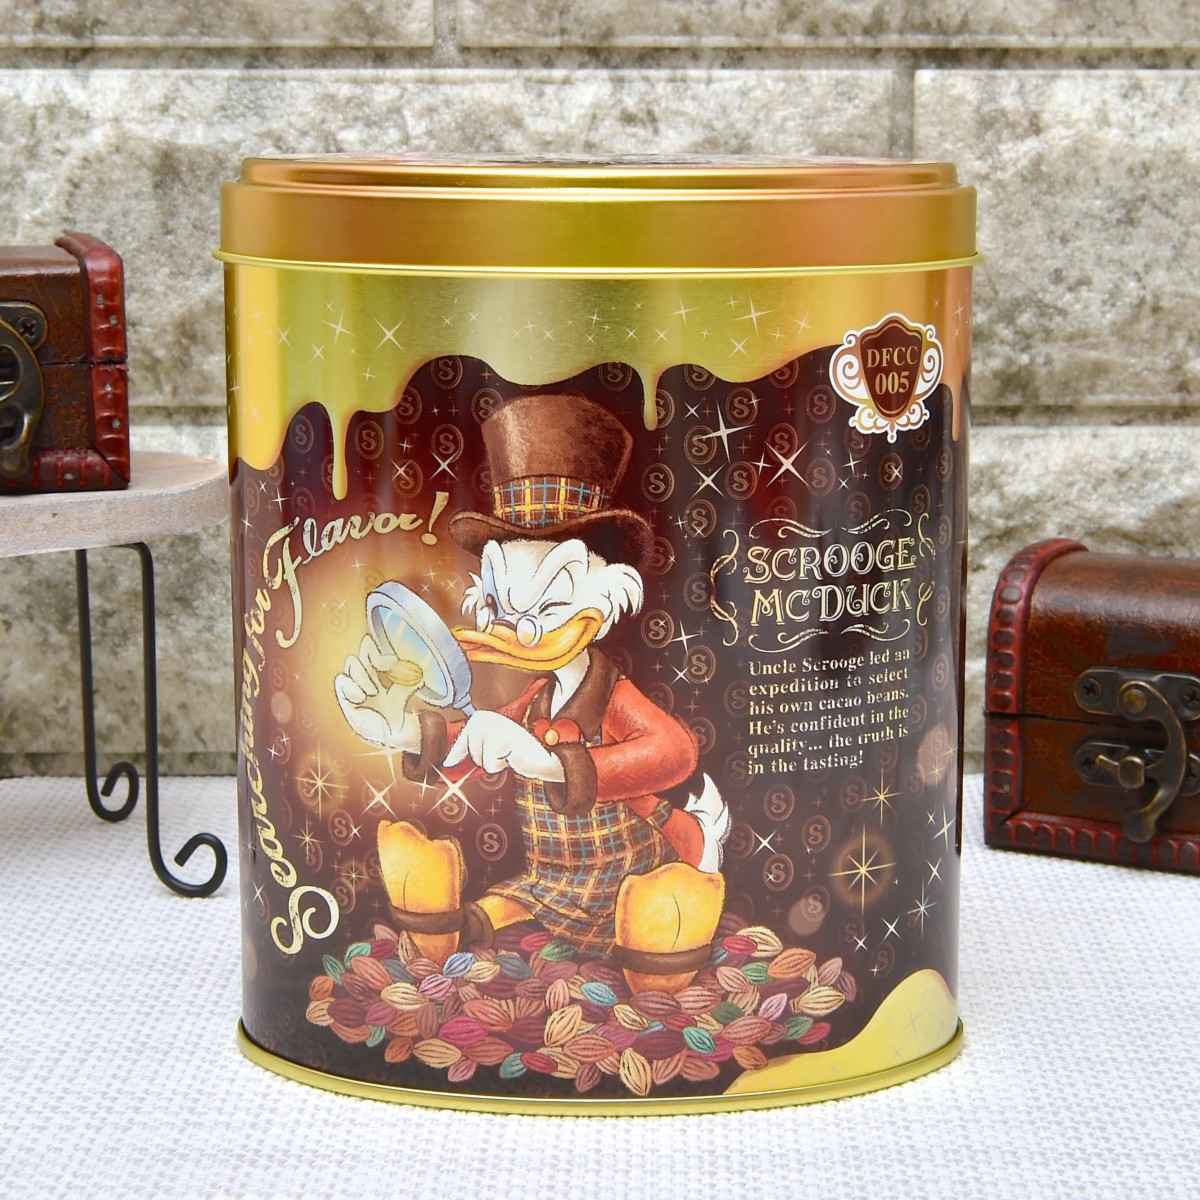 「チョコレートクランチ・ピック&マンチ」スクルージ・マクダック デザイン缶2